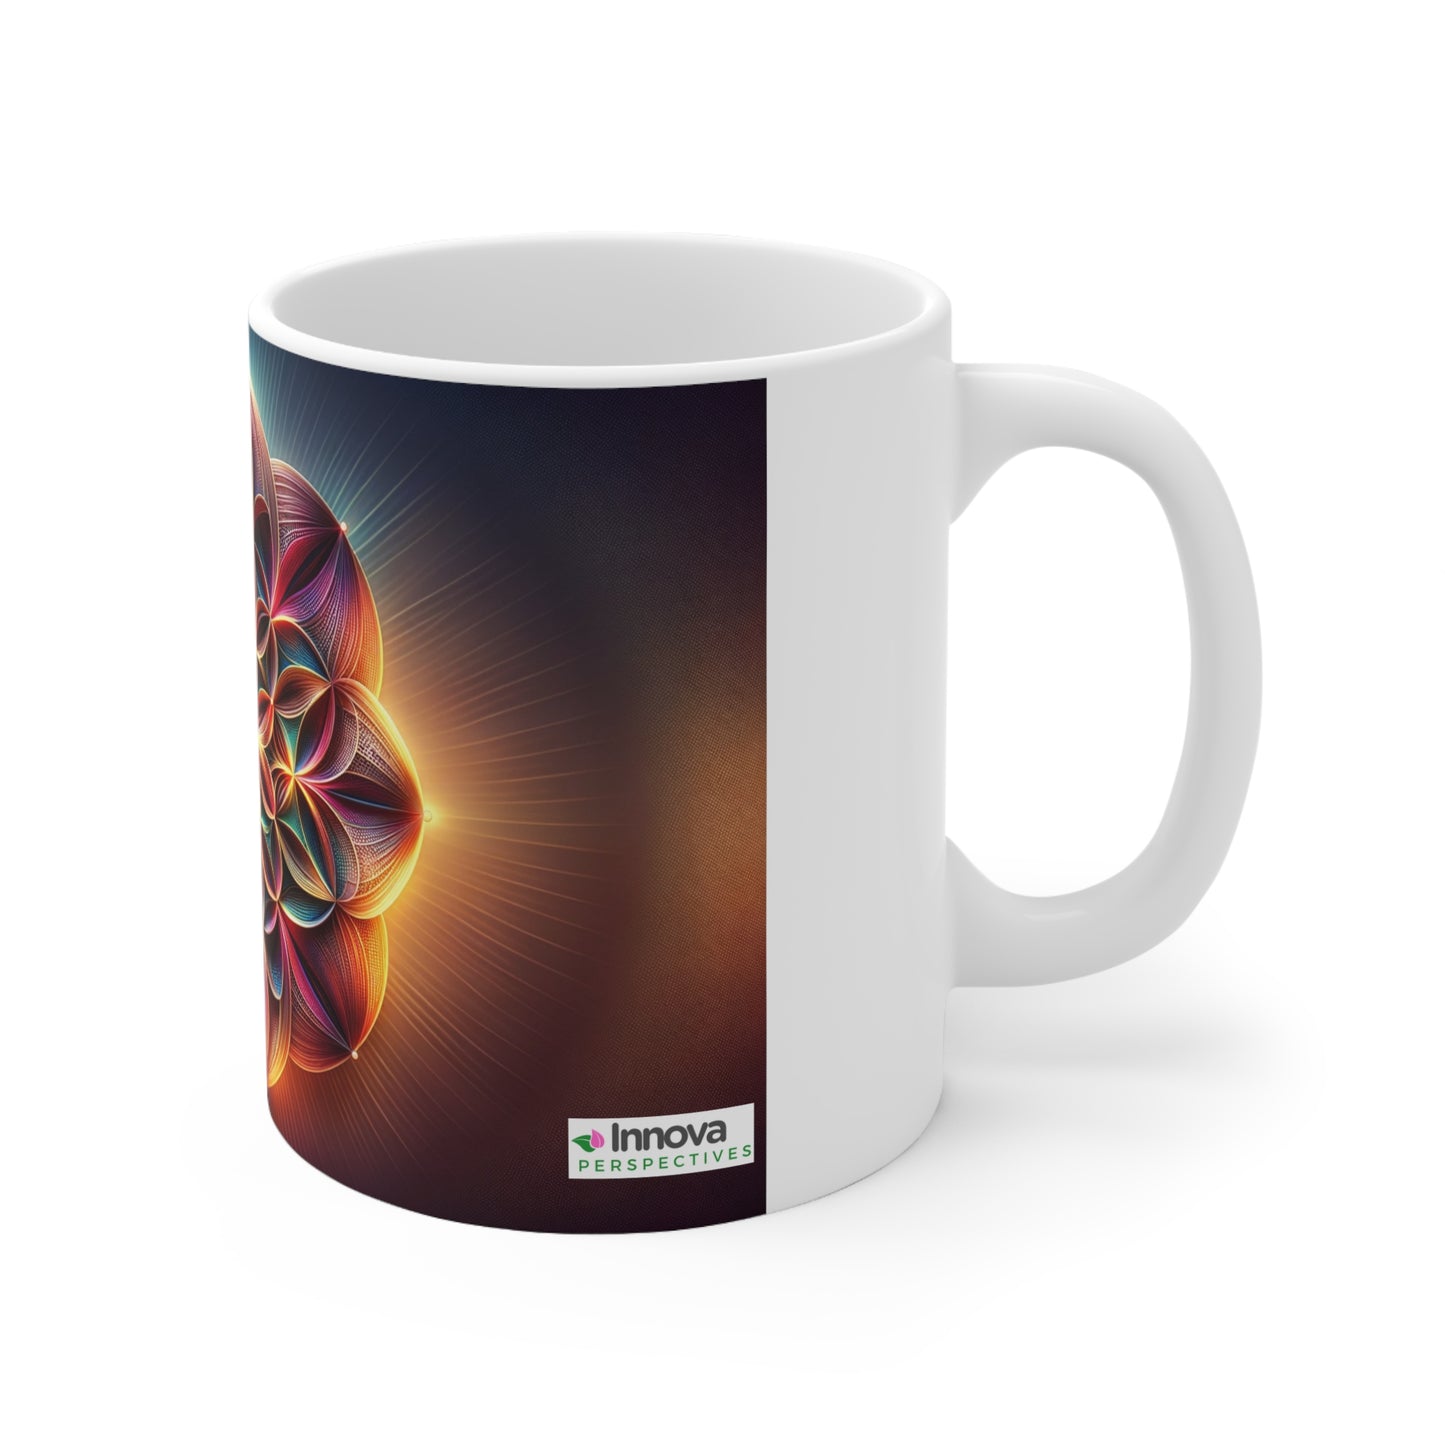 11oz Flower of Life Mug – 100% Lead & BPA-Free Ceramic, 325ml Capacity